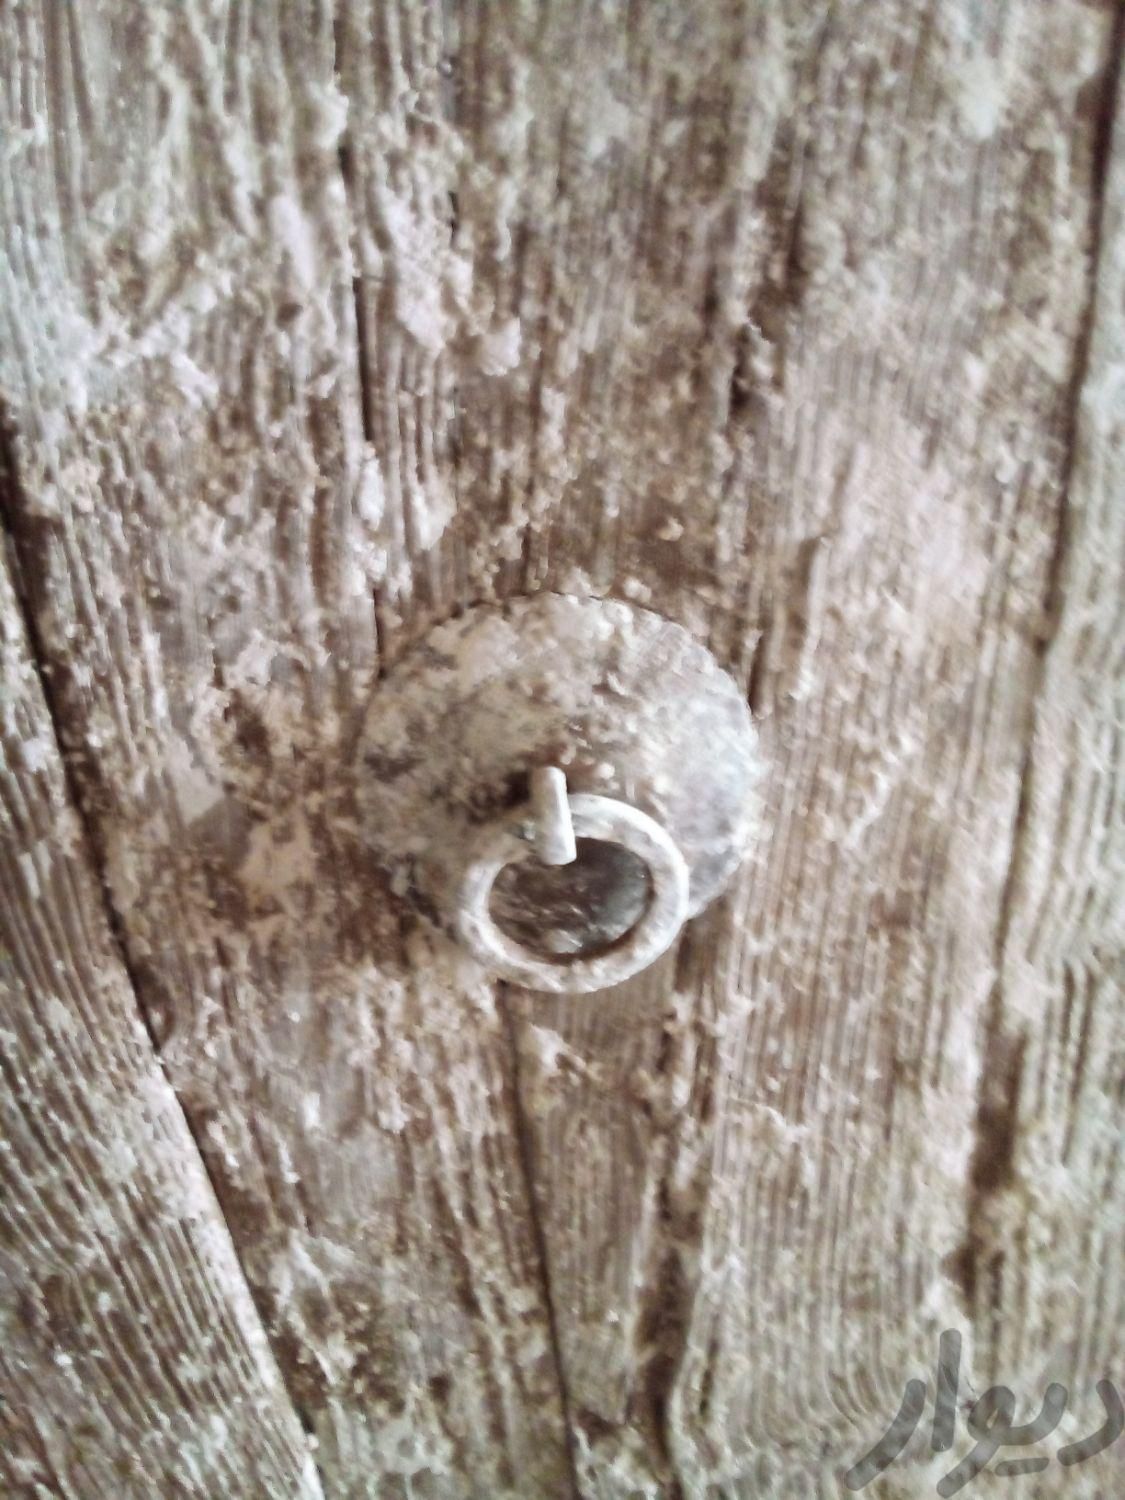 درب چوبی قدیمی|اشیای عتیقه|میبد, |دیوار